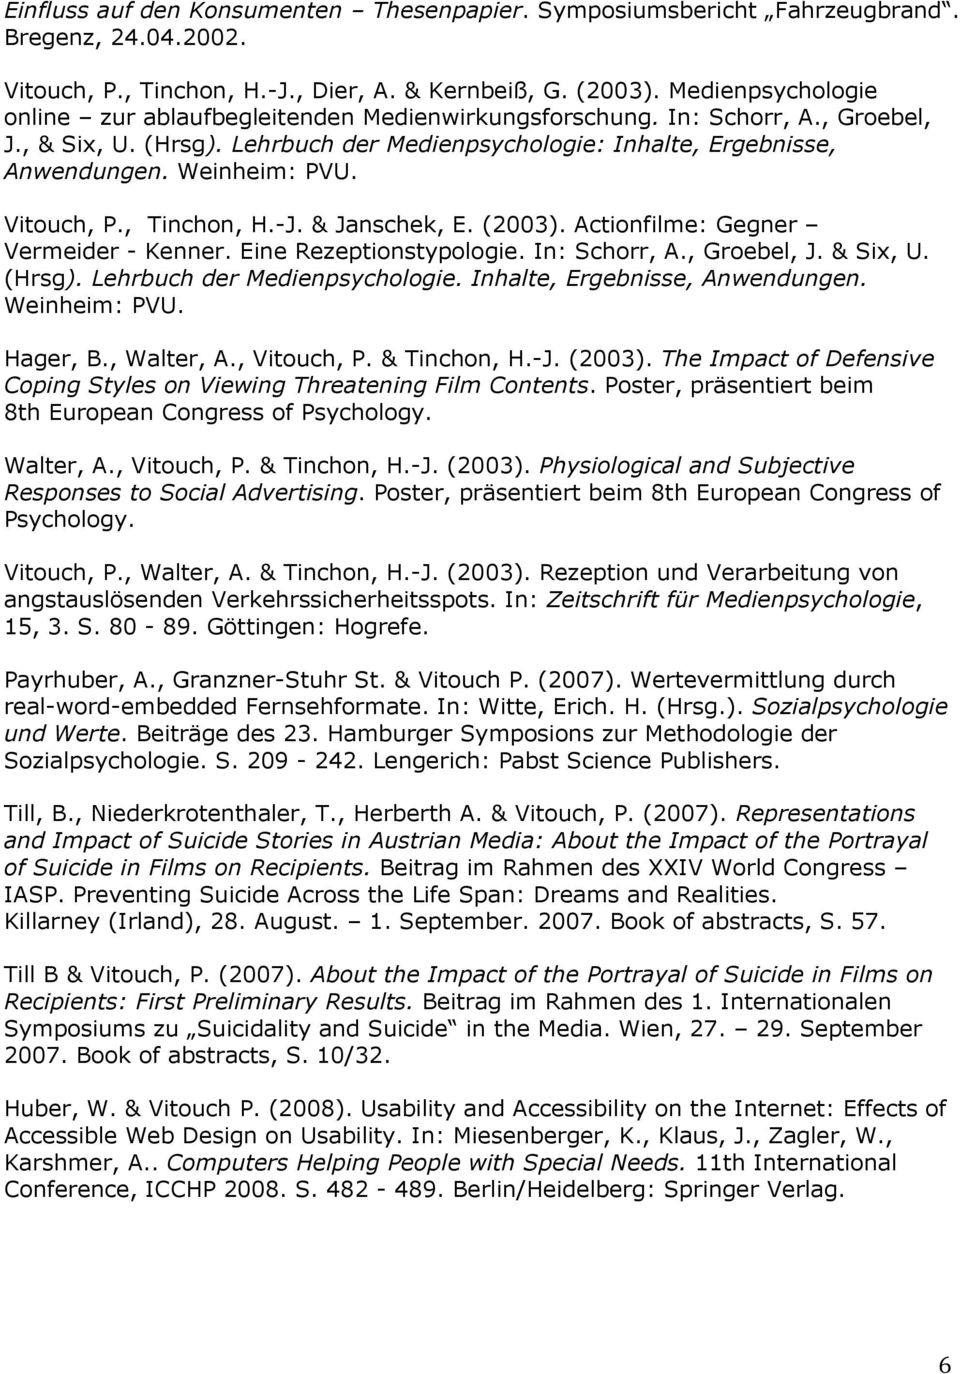 Vitouch, P., Tinchon, H.-J. & Janschek, E. (2003). Actionfilme: Gegner Vermeider - Kenner. Eine Rezeptionstypologie. In: Schorr, A., Groebel, J. & Six, U. (Hrsg). Lehrbuch der Medienpsychologie.